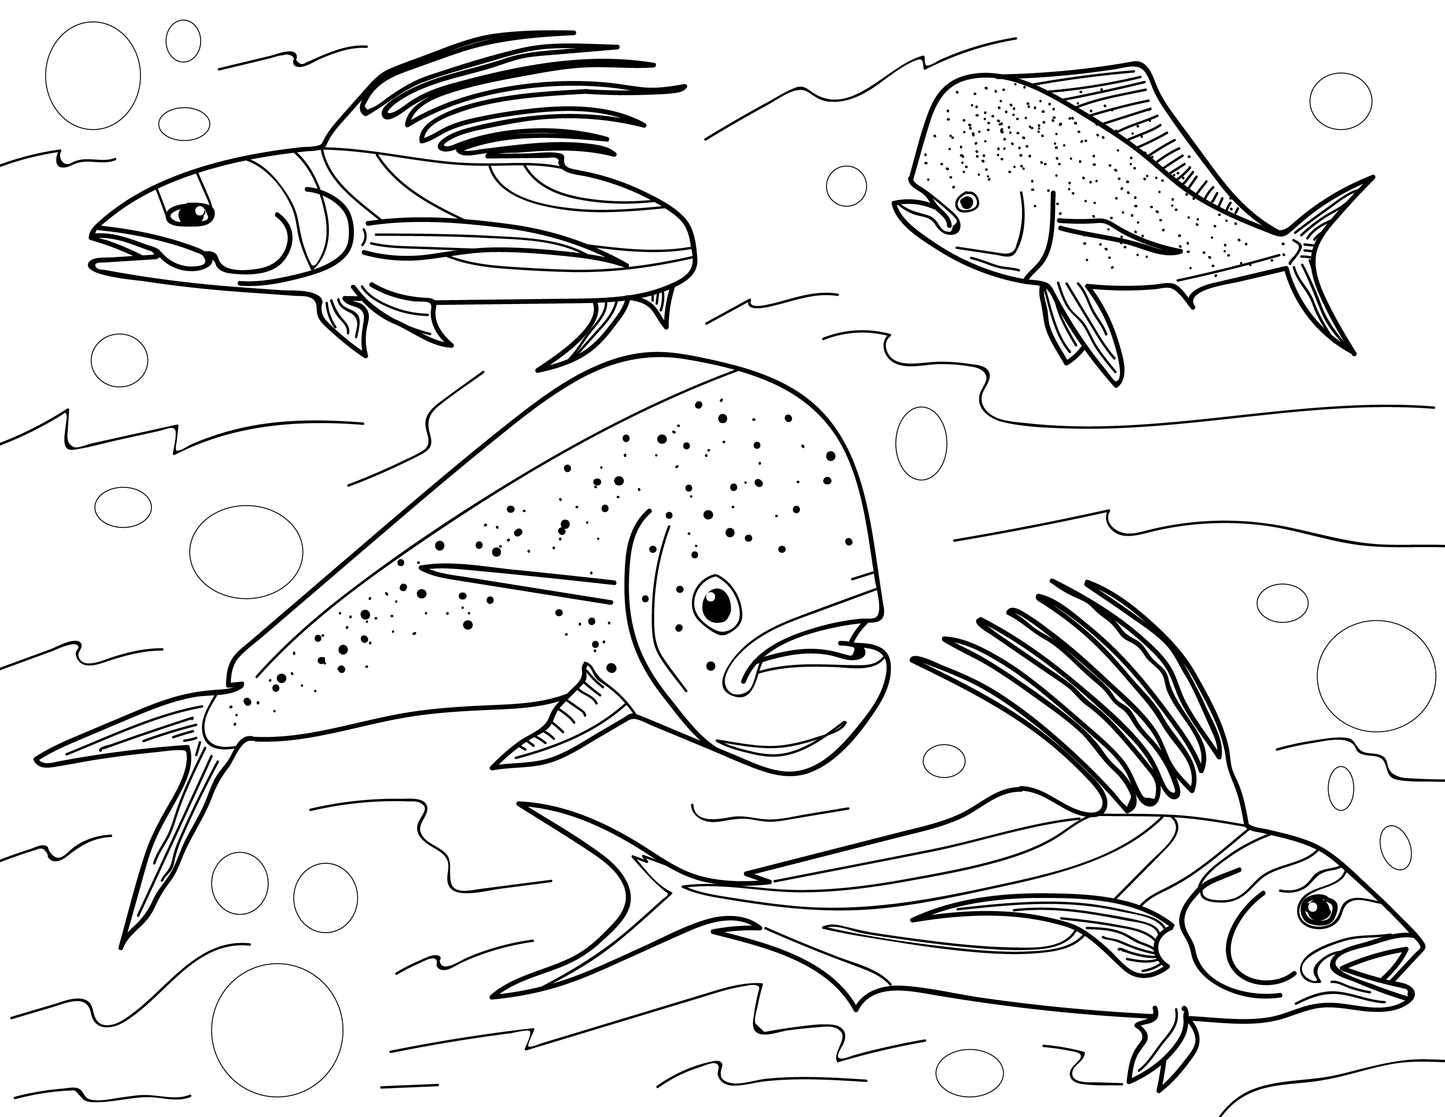 Libro educativo para colorear peces del Pacífico